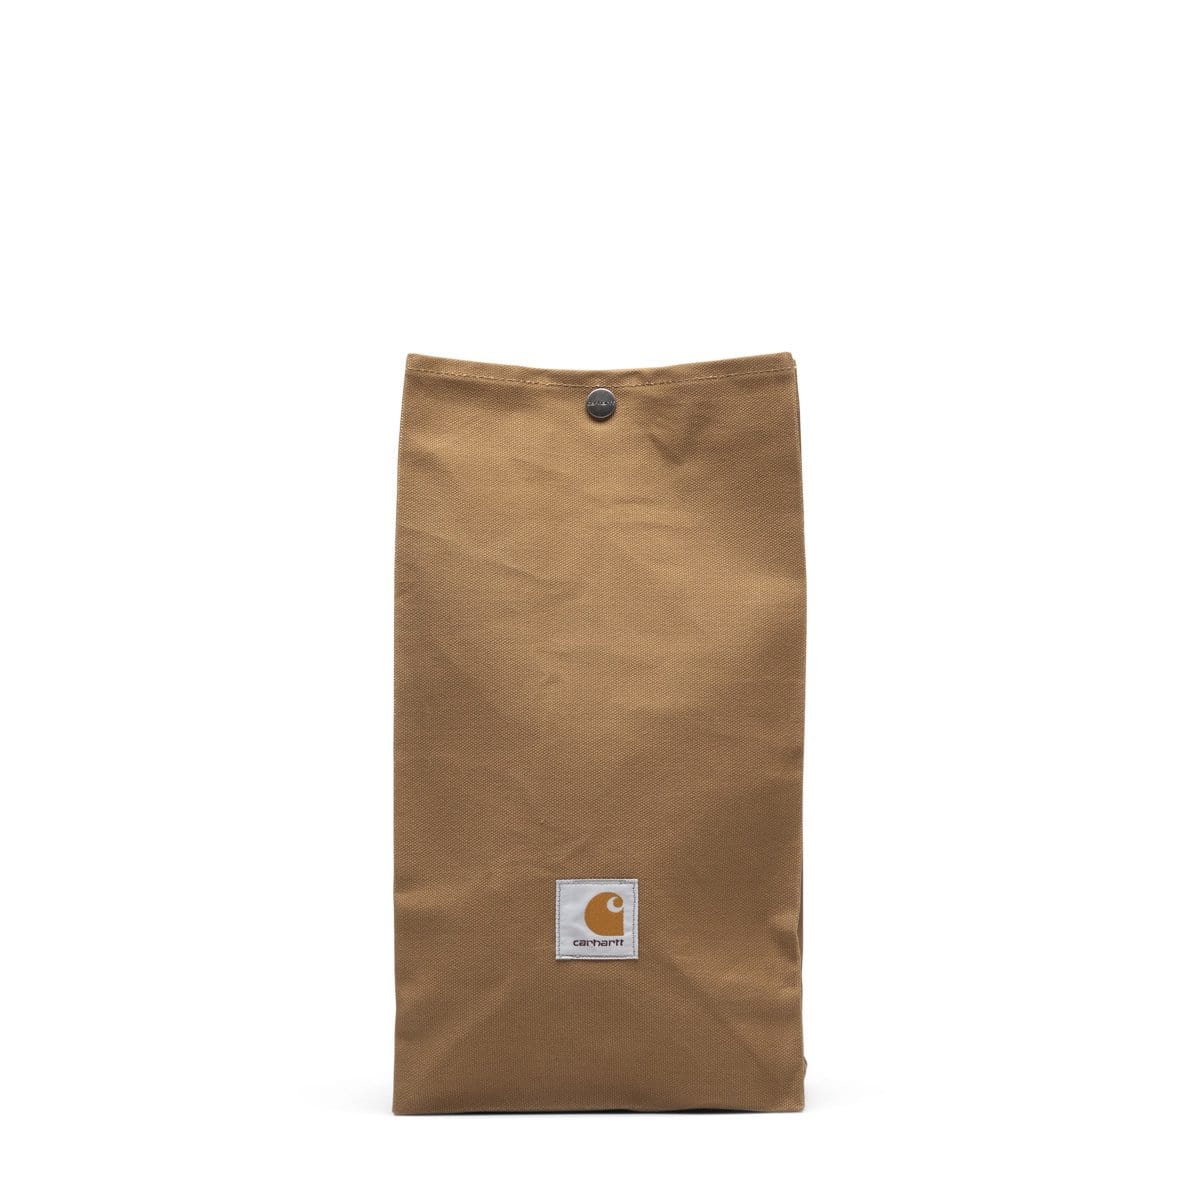 Carhartt WIP Bags HAMILTON B ROWN / O/S LUNCH BAG